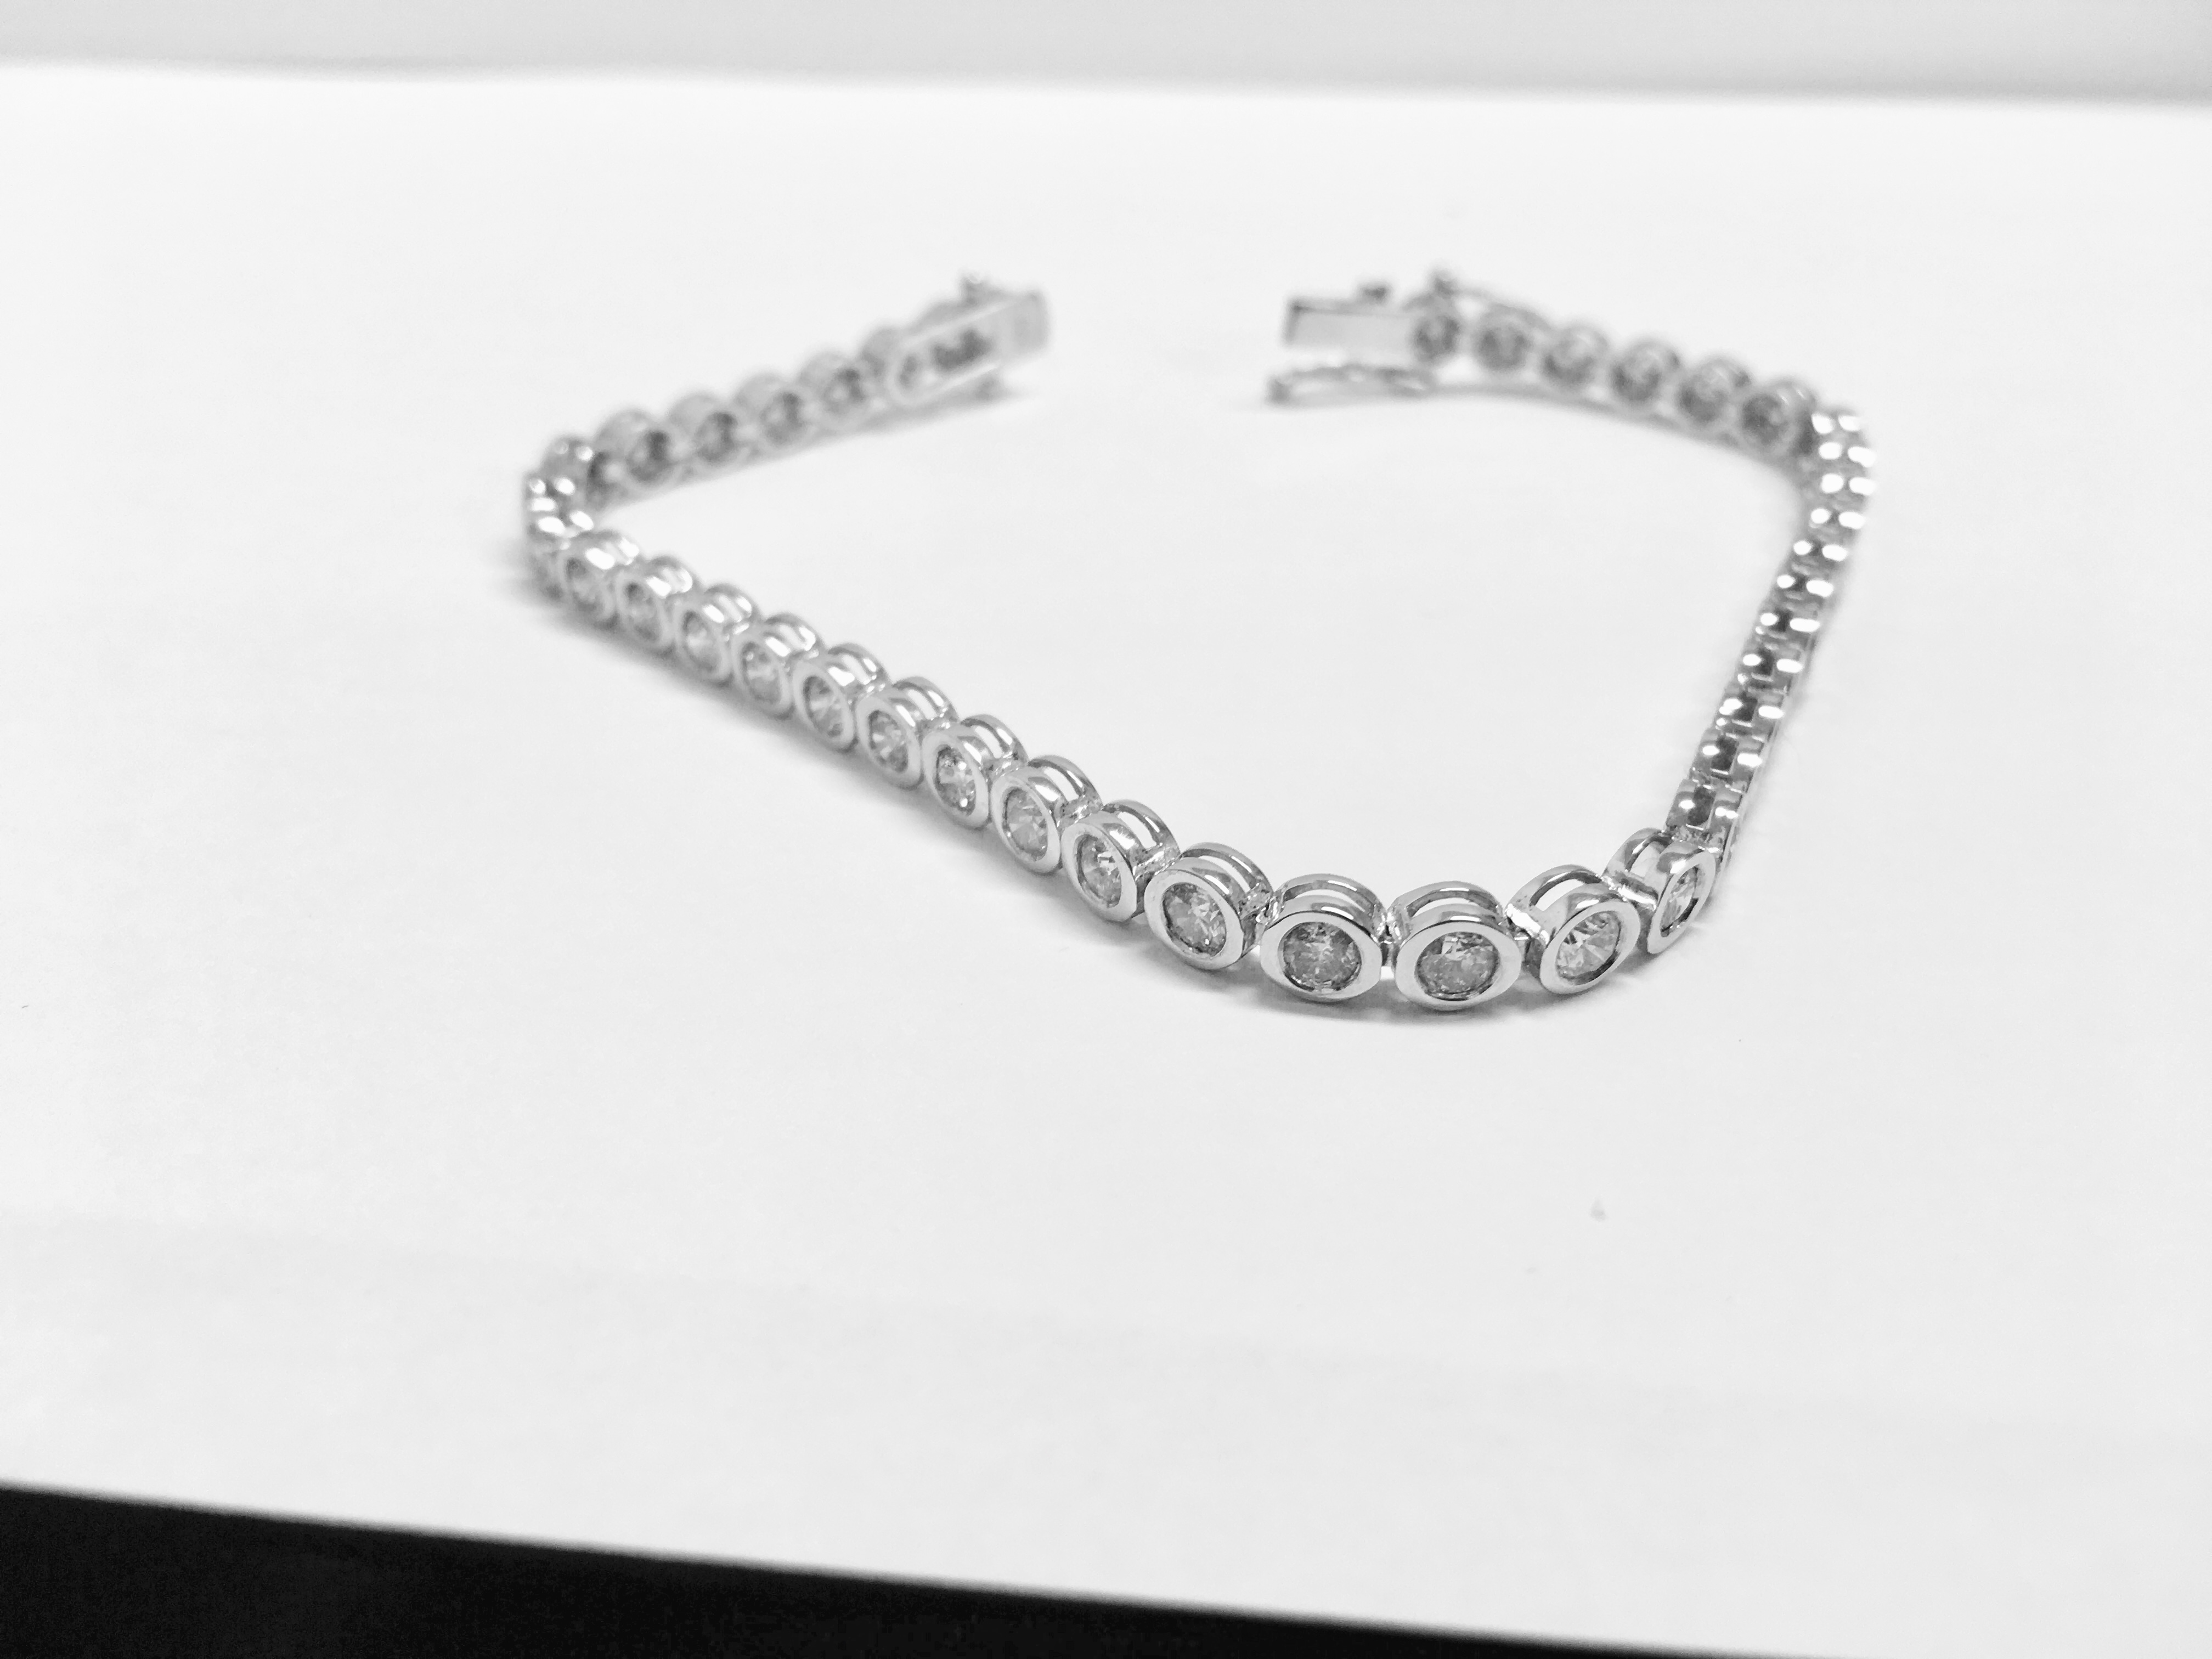 3.50ct tennis style bracelet set with brilliant cut diamonds